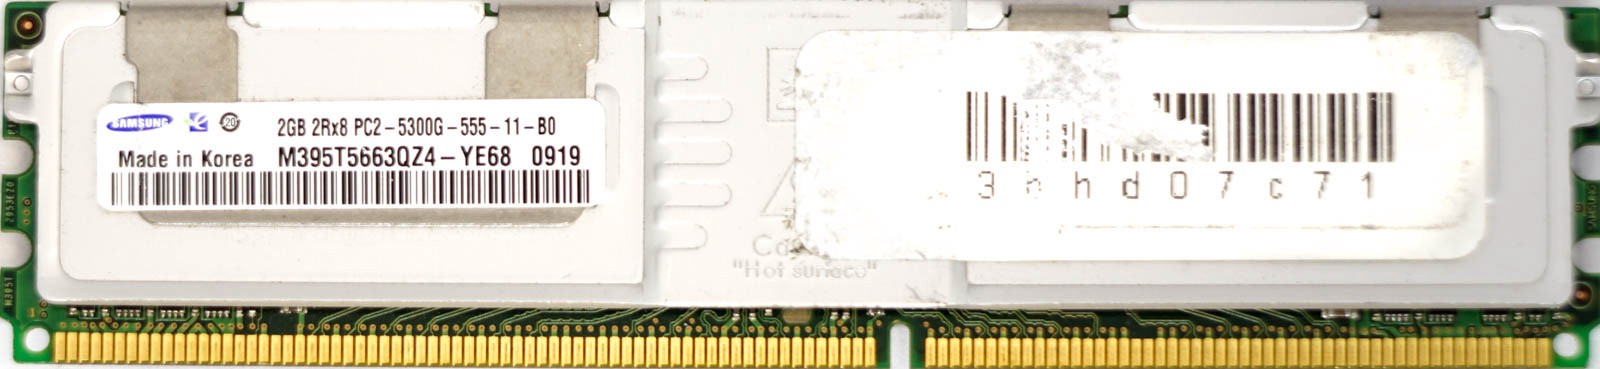 Samsung - 2GB PC2-5300G (DDR2-667Mhz, 2RX8)